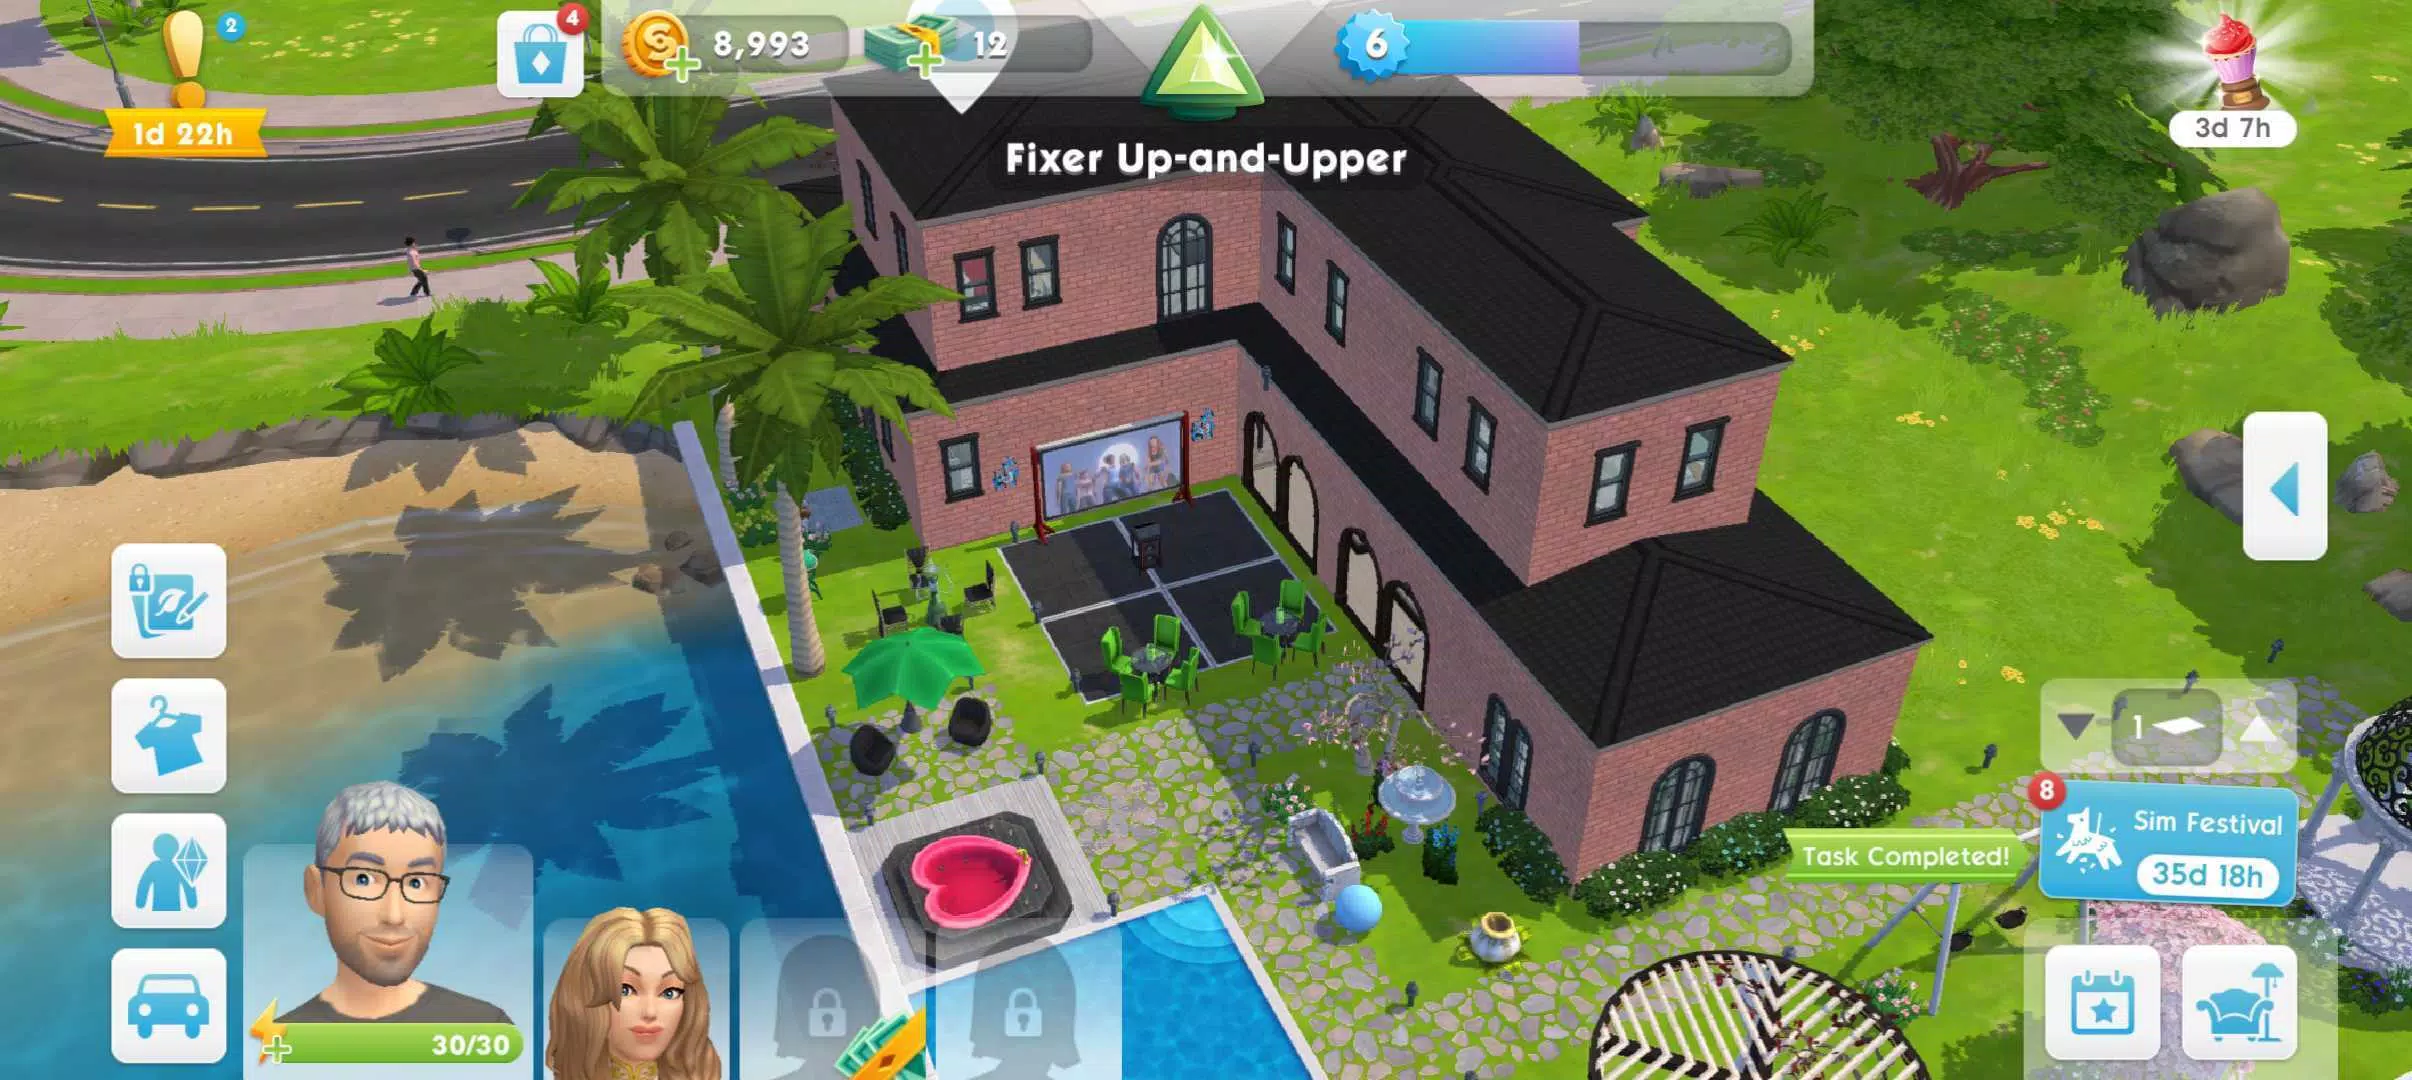 The Sims Mobile - Socializar e criar relacionamentos no The Sims